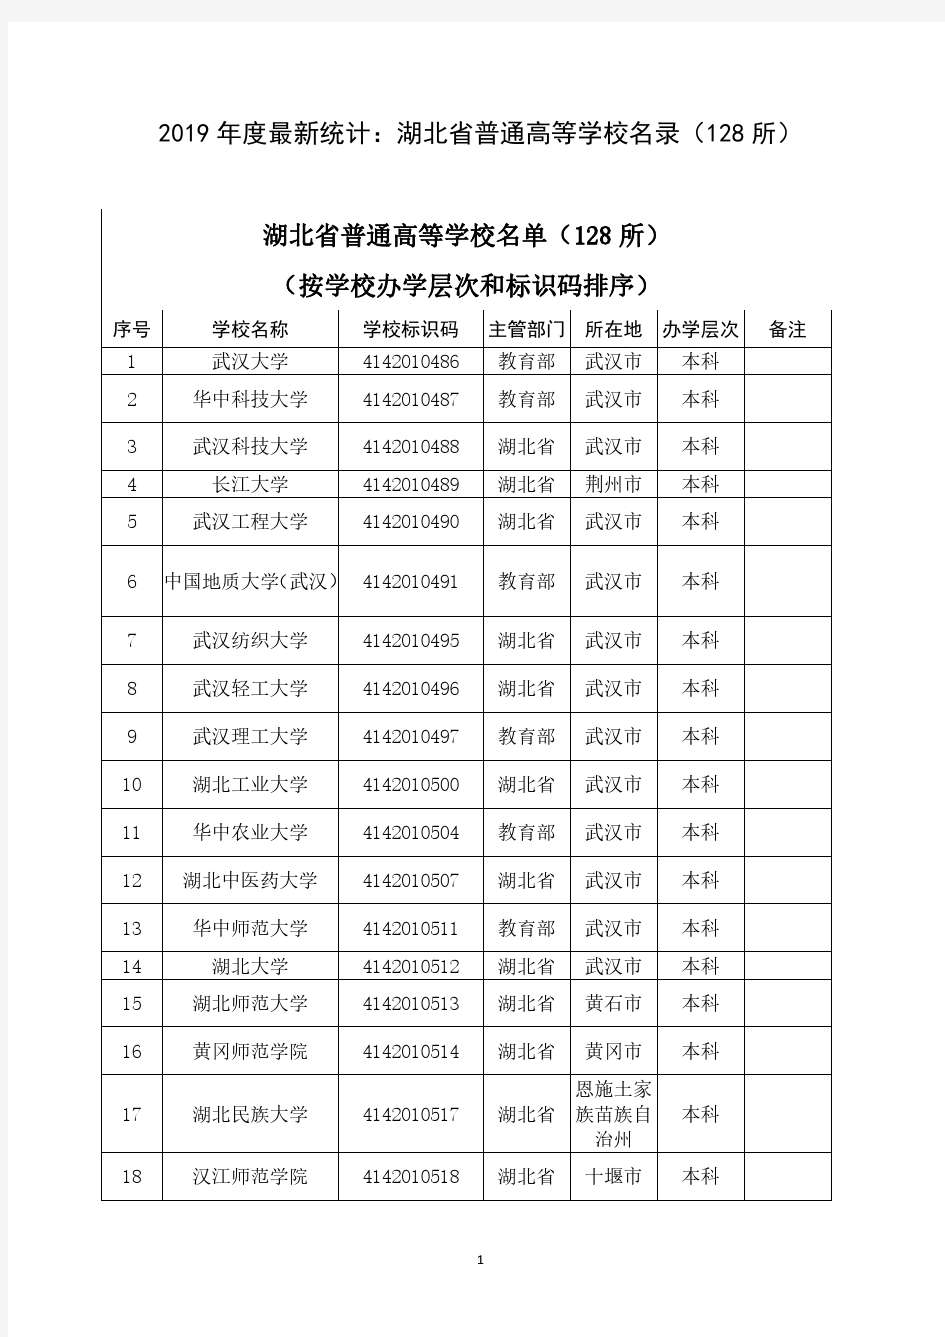 2019年度最新统计：湖北省普通高等学校名录(128所)